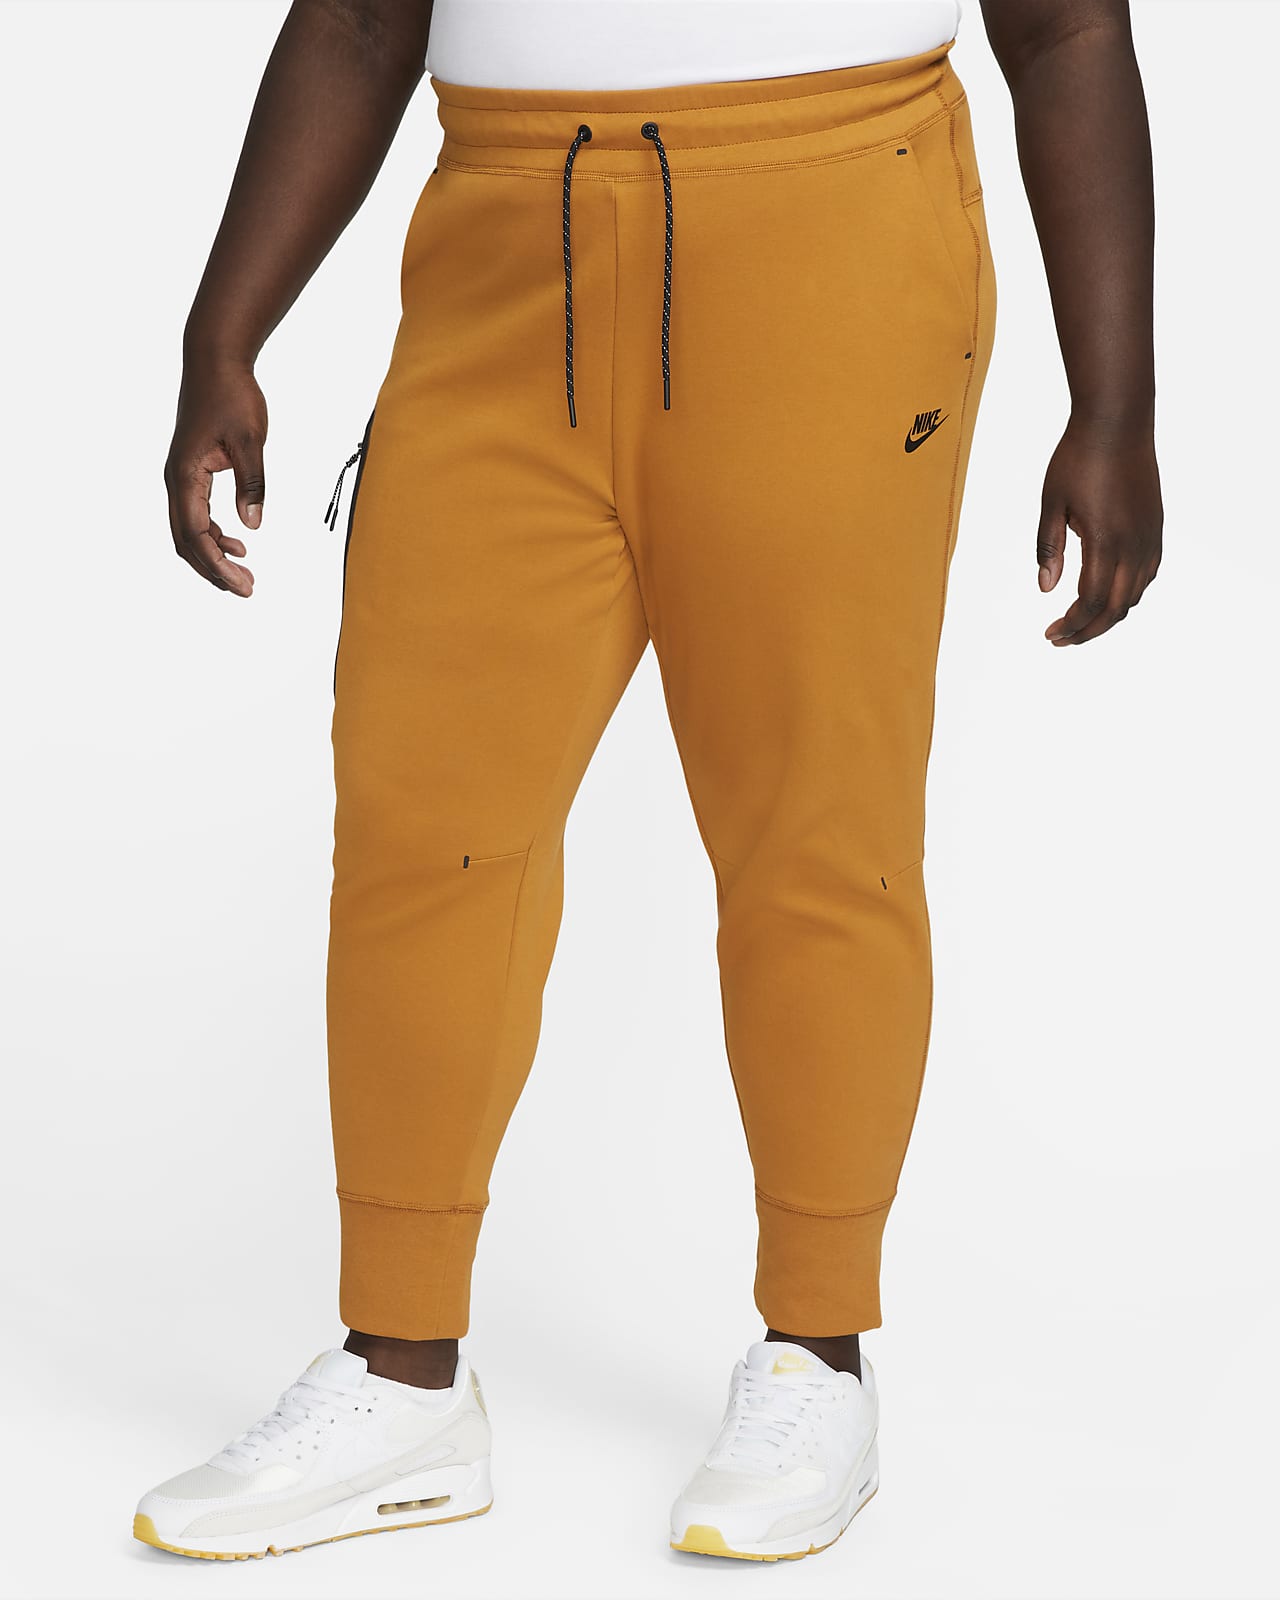 Sportswear Tech Women's Pants Size). Nike.com